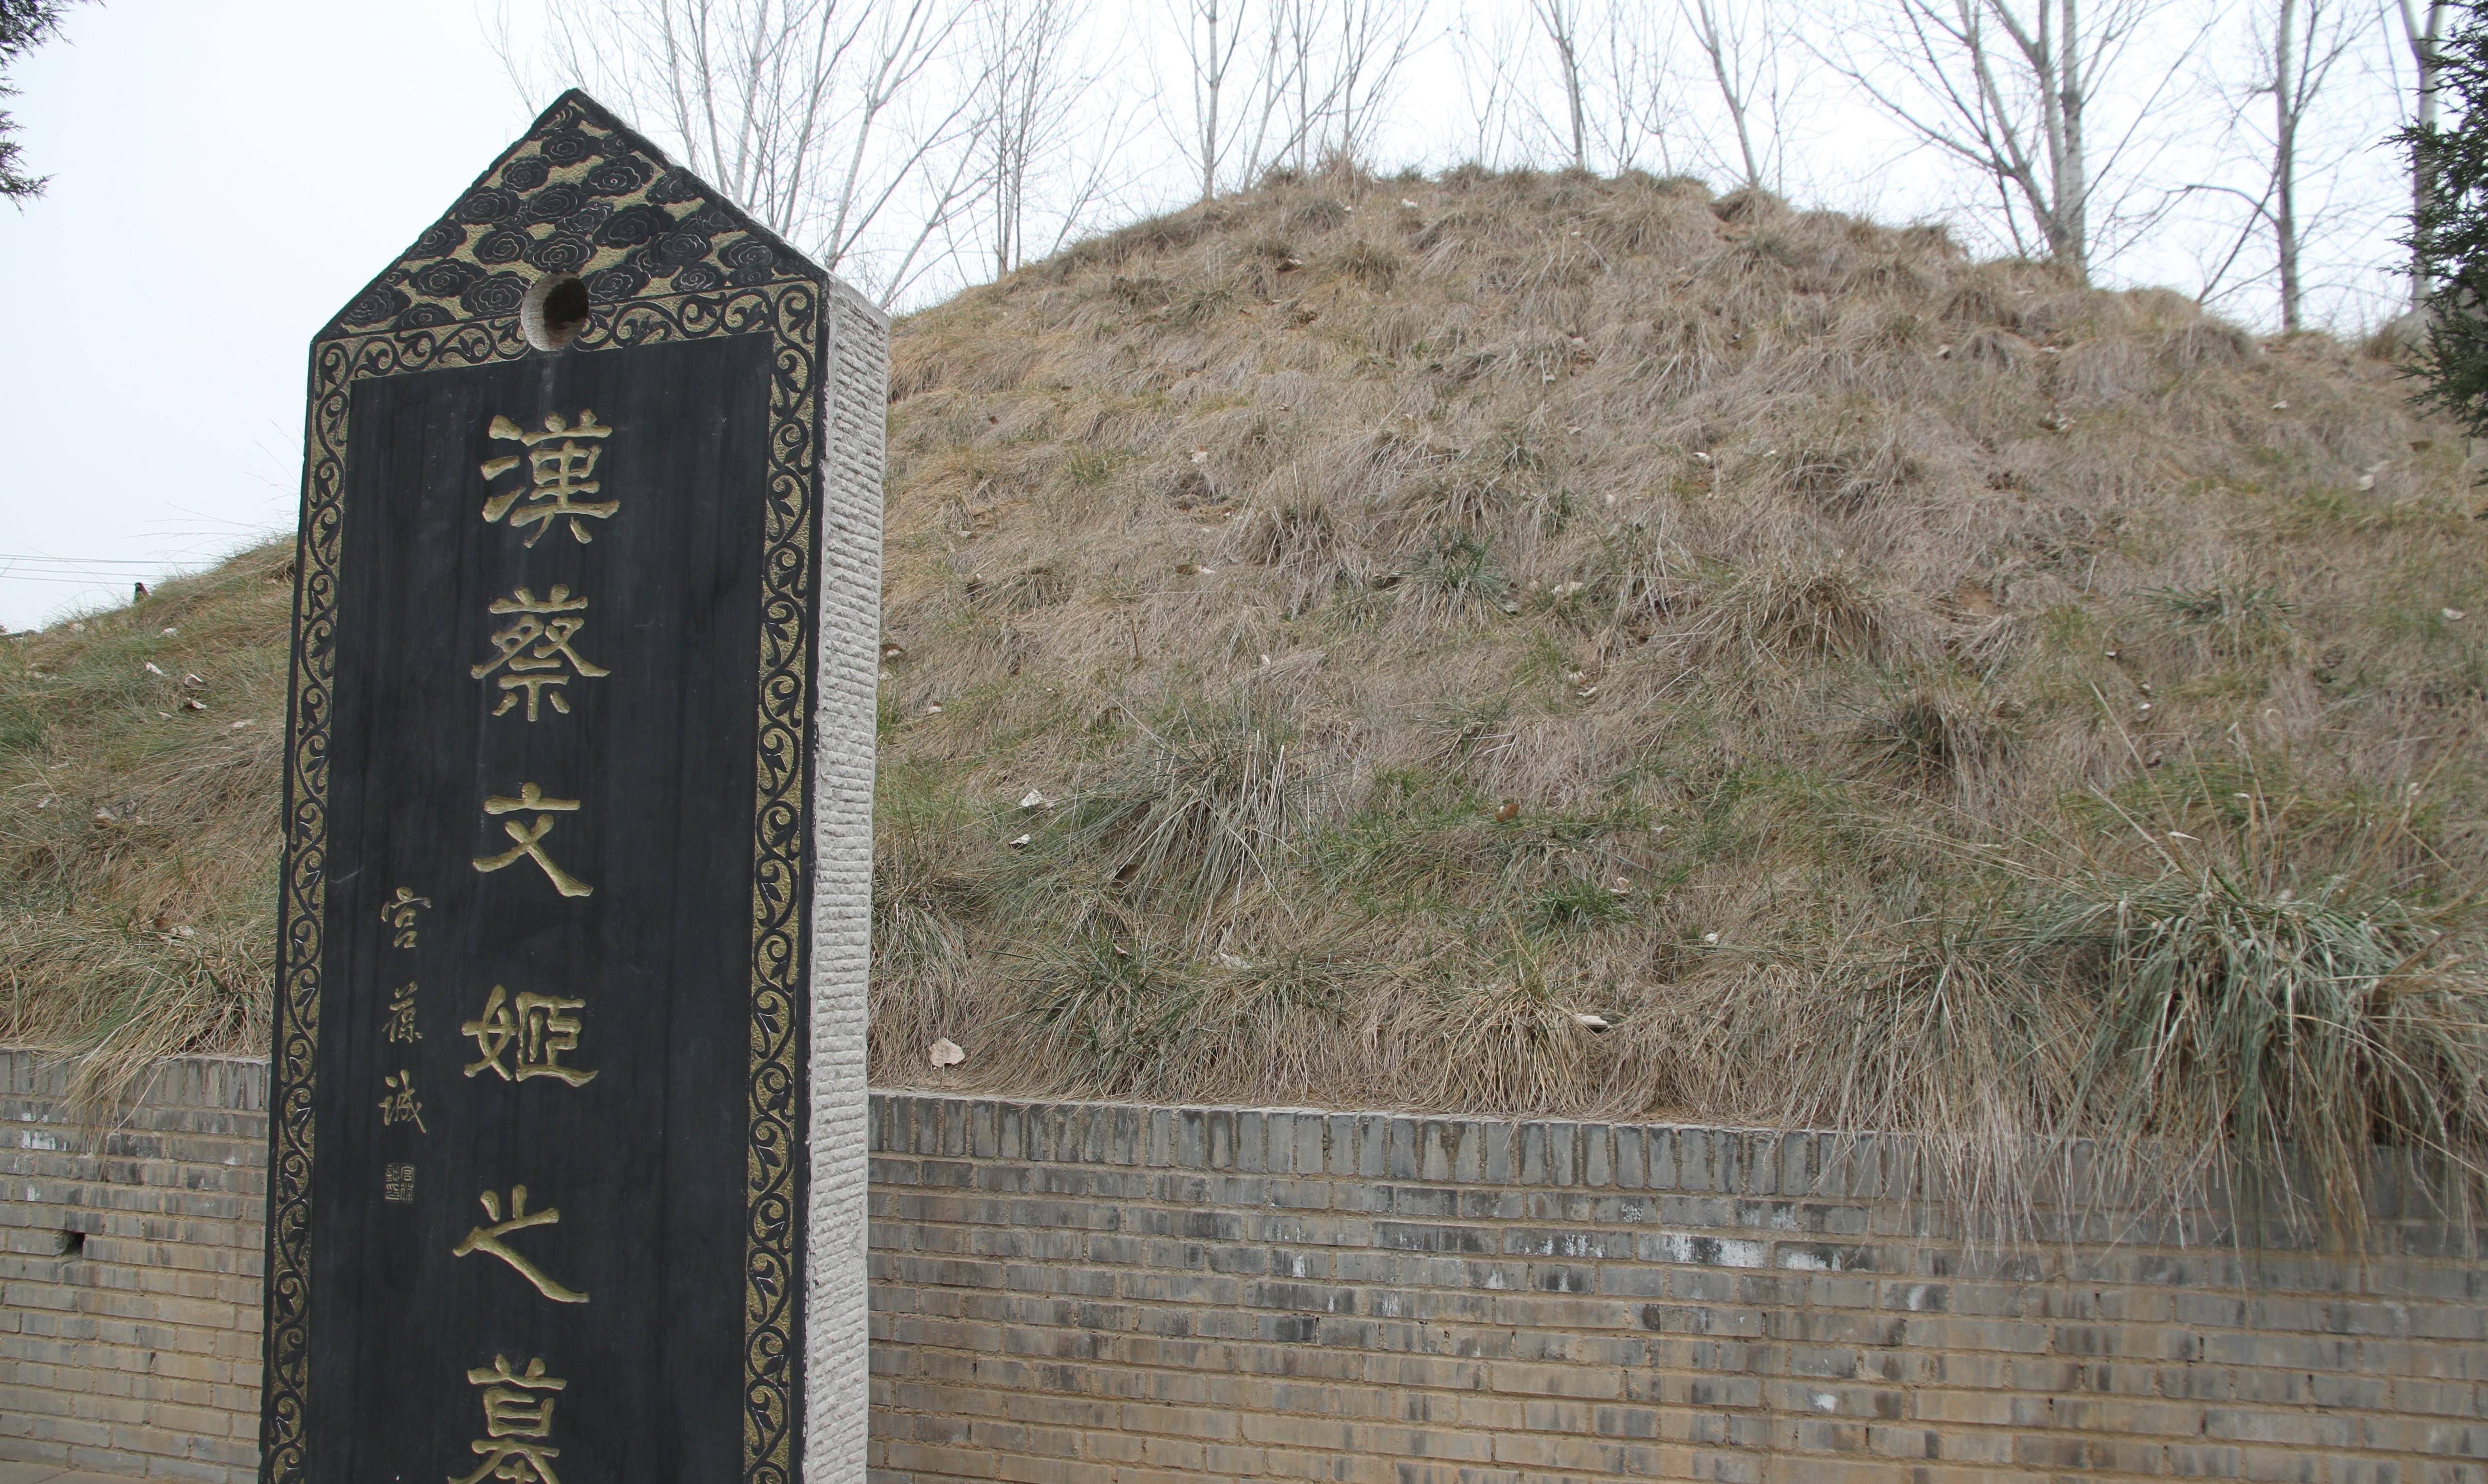 在离西安城区仅二三十公里的蓝田县城内,有一座小巧的汉魏时期的古墓